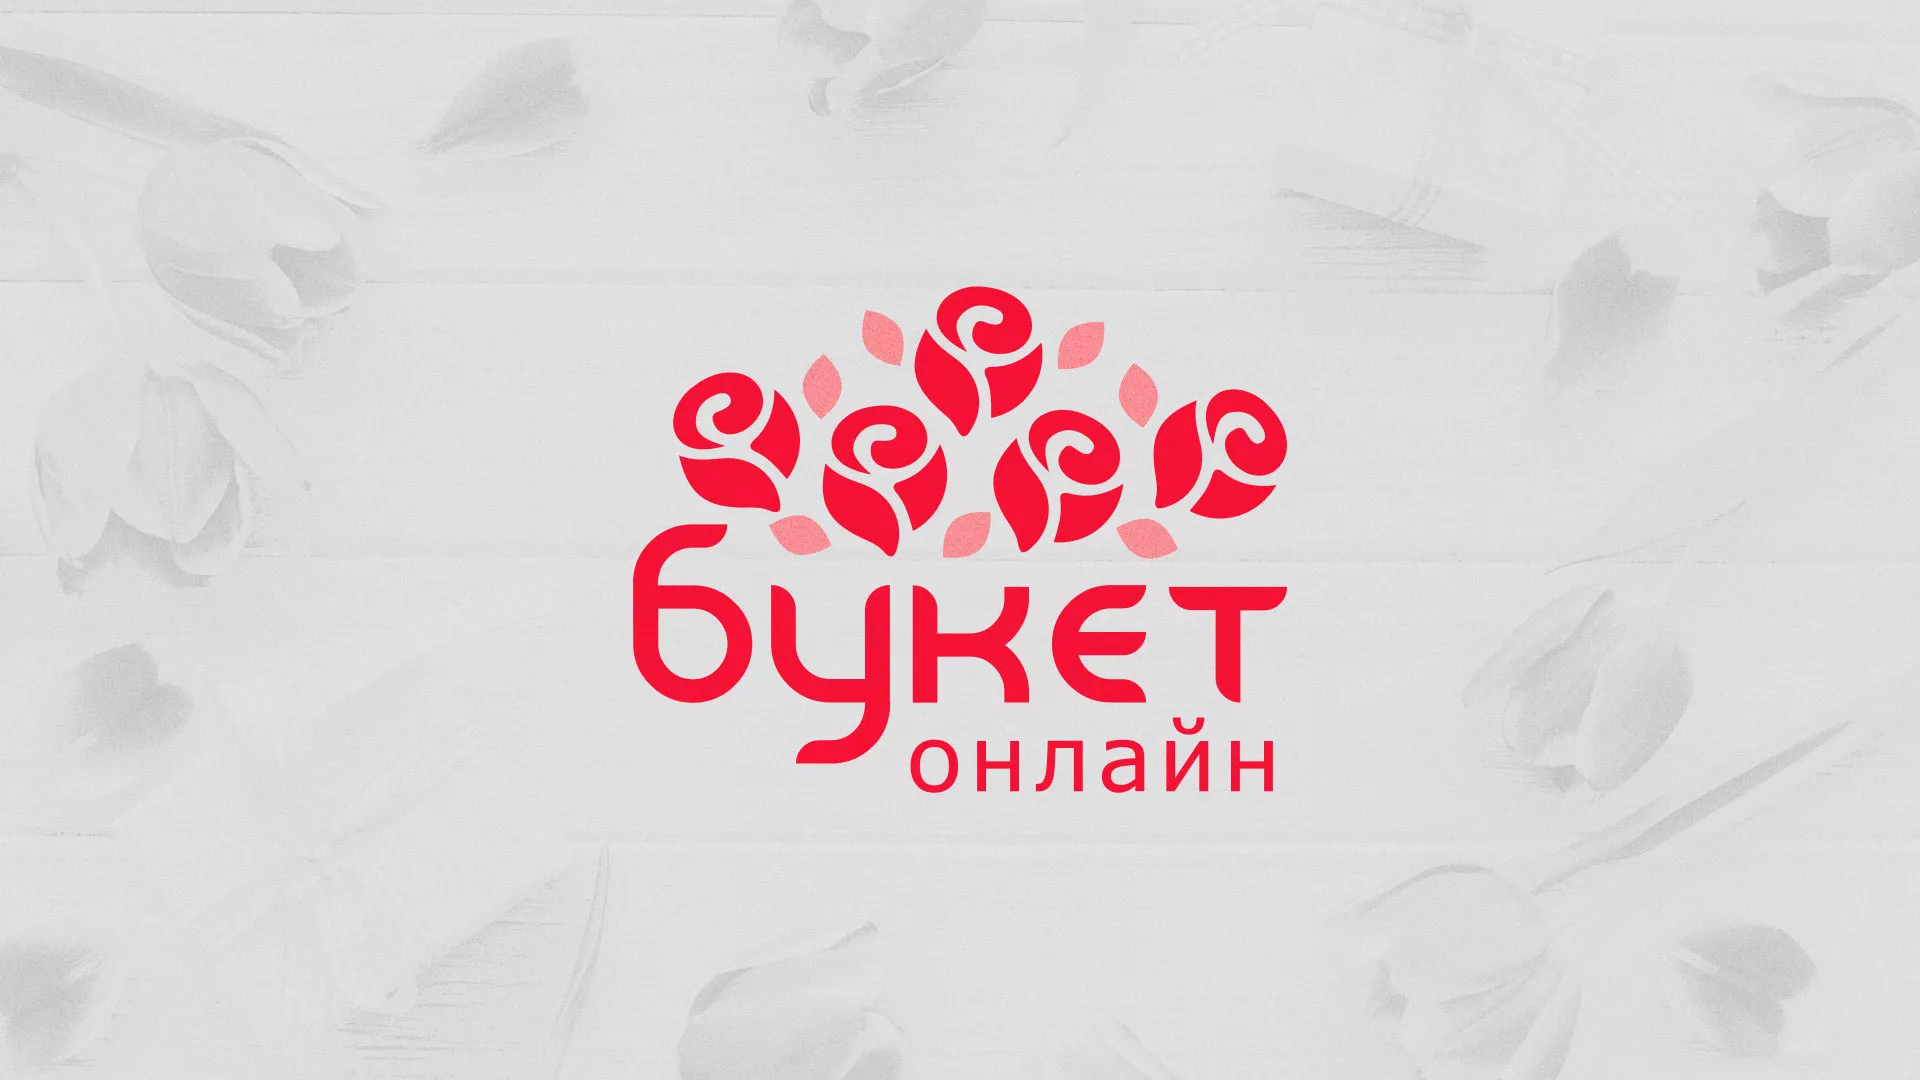 Создание интернет-магазина «Букет-онлайн» по цветам в Клинцах